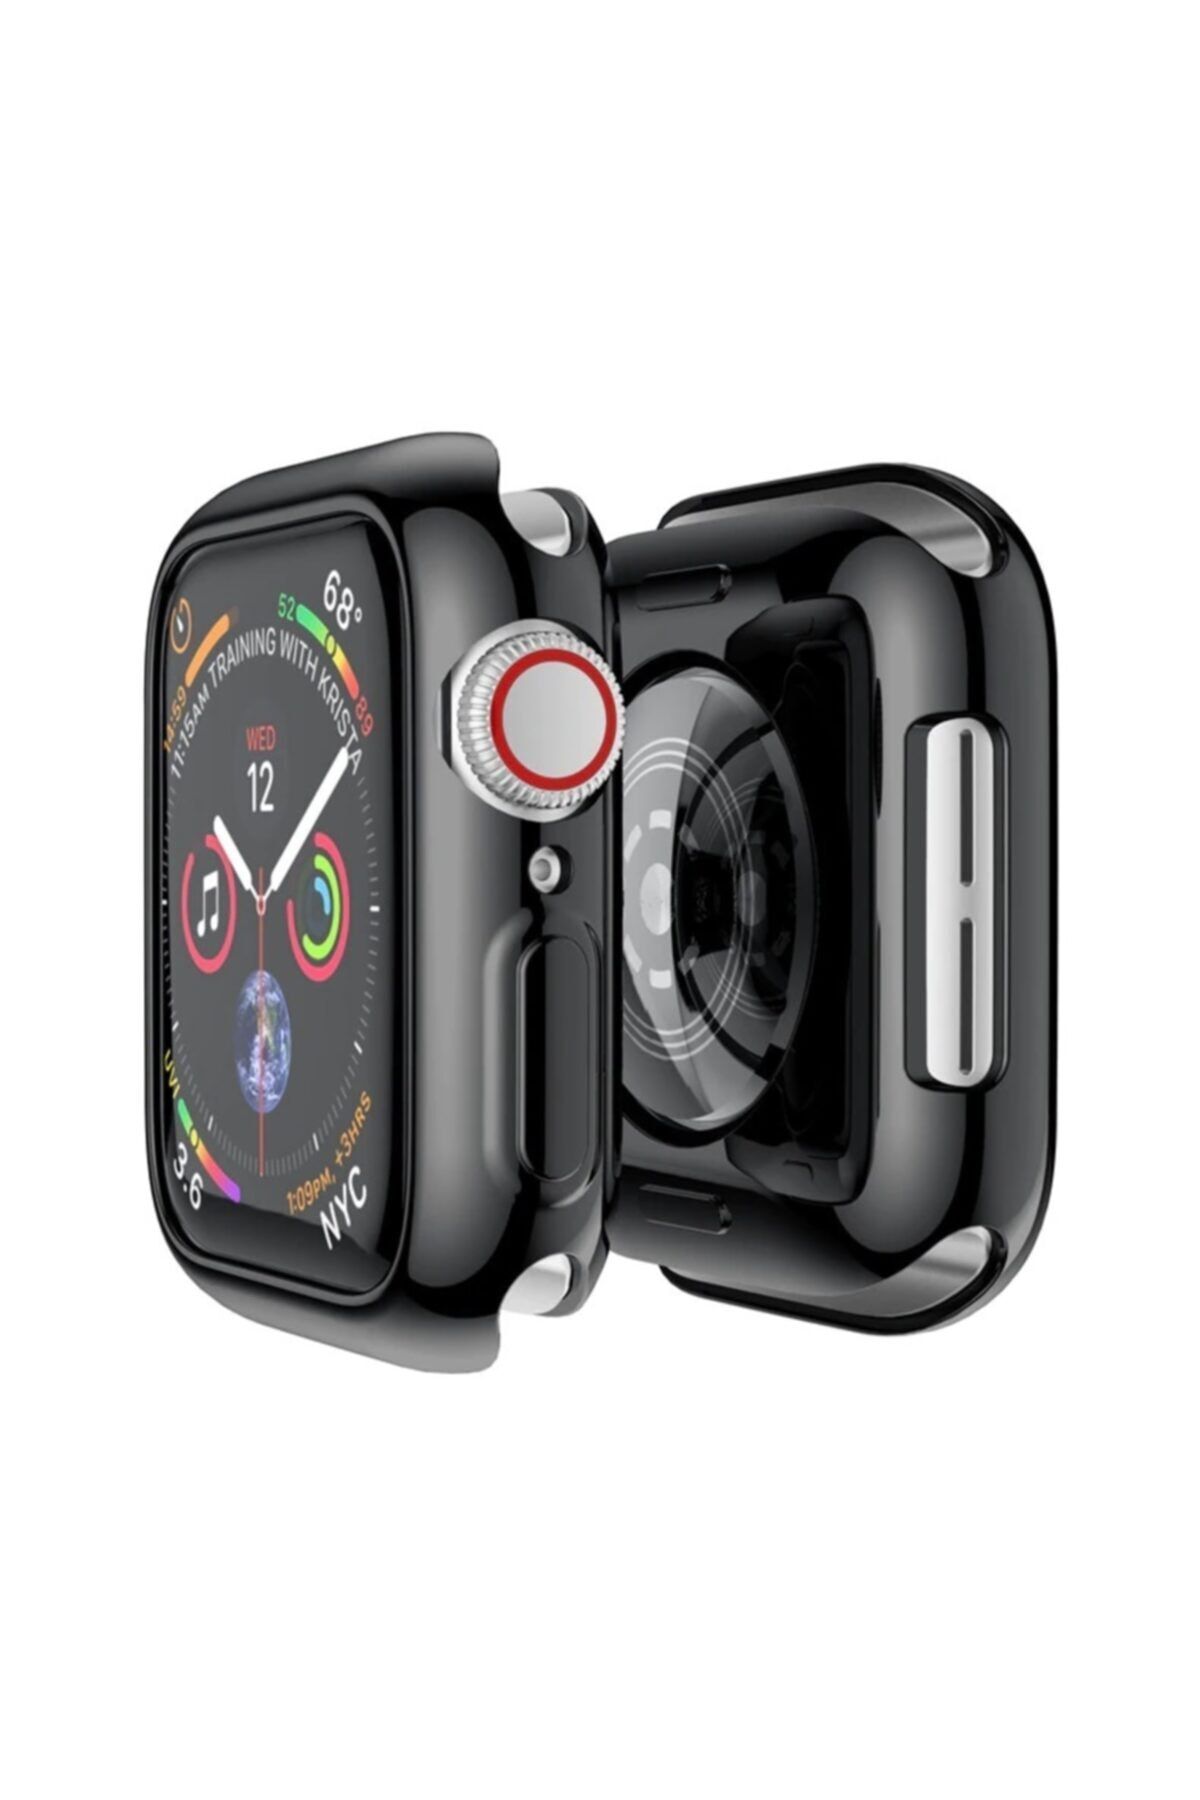 TOMMYWOLF Apple Watch 4 5 6 Uyumlu Silikon Kılıf 44mm Watch 44mm Tam Koruma